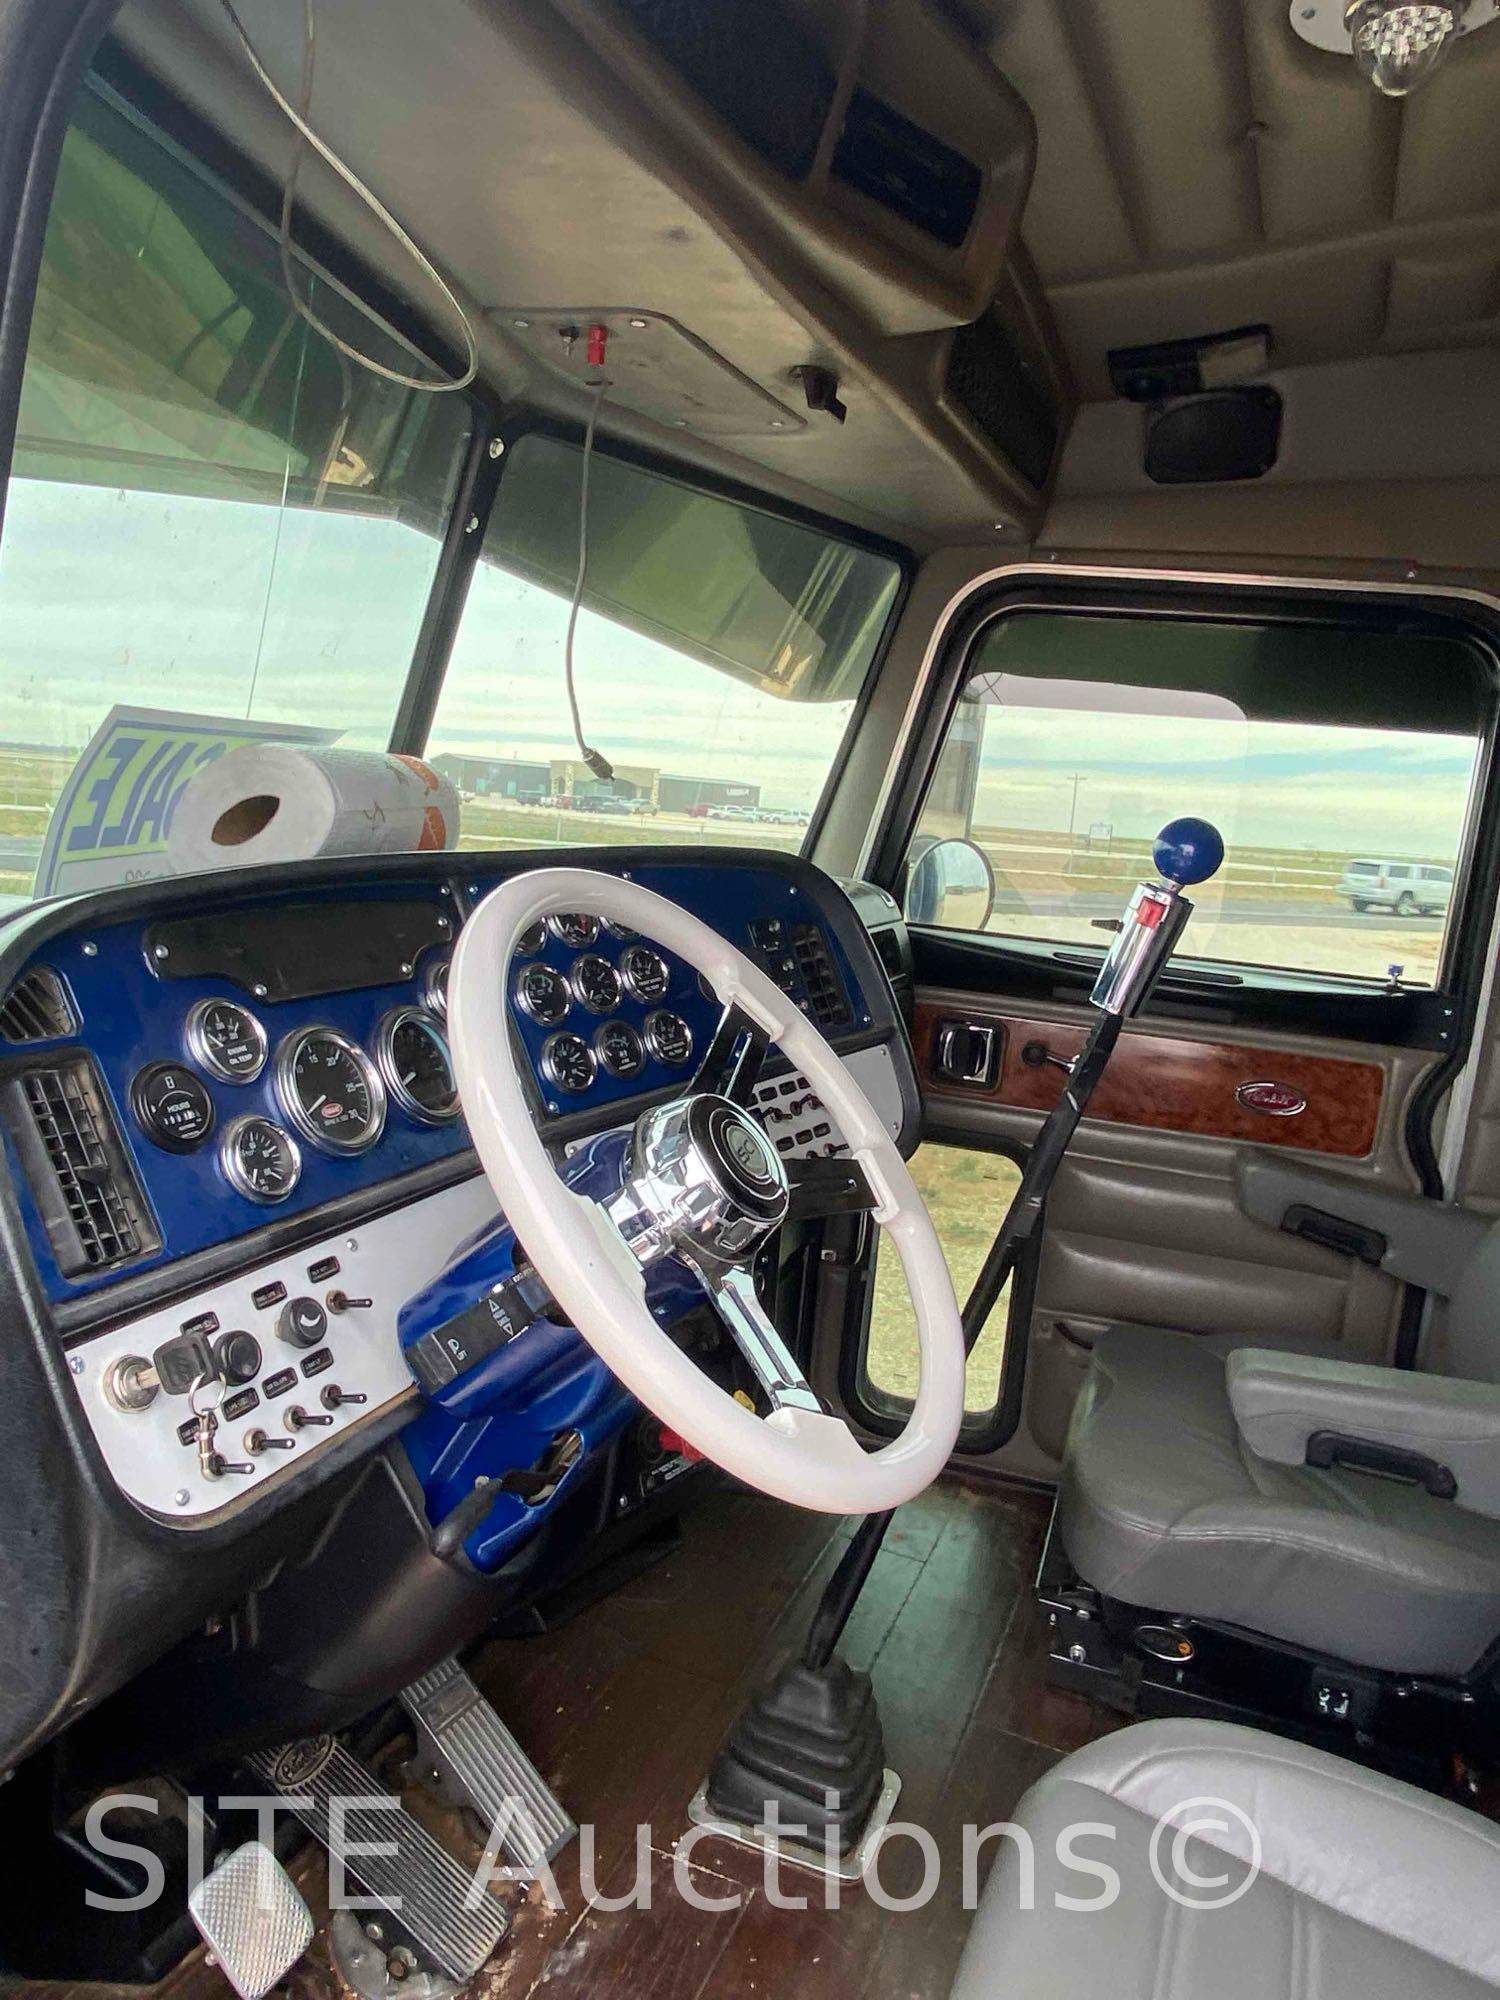 2005 Peterbilt 379 T/A Sleeper Truck Tractor